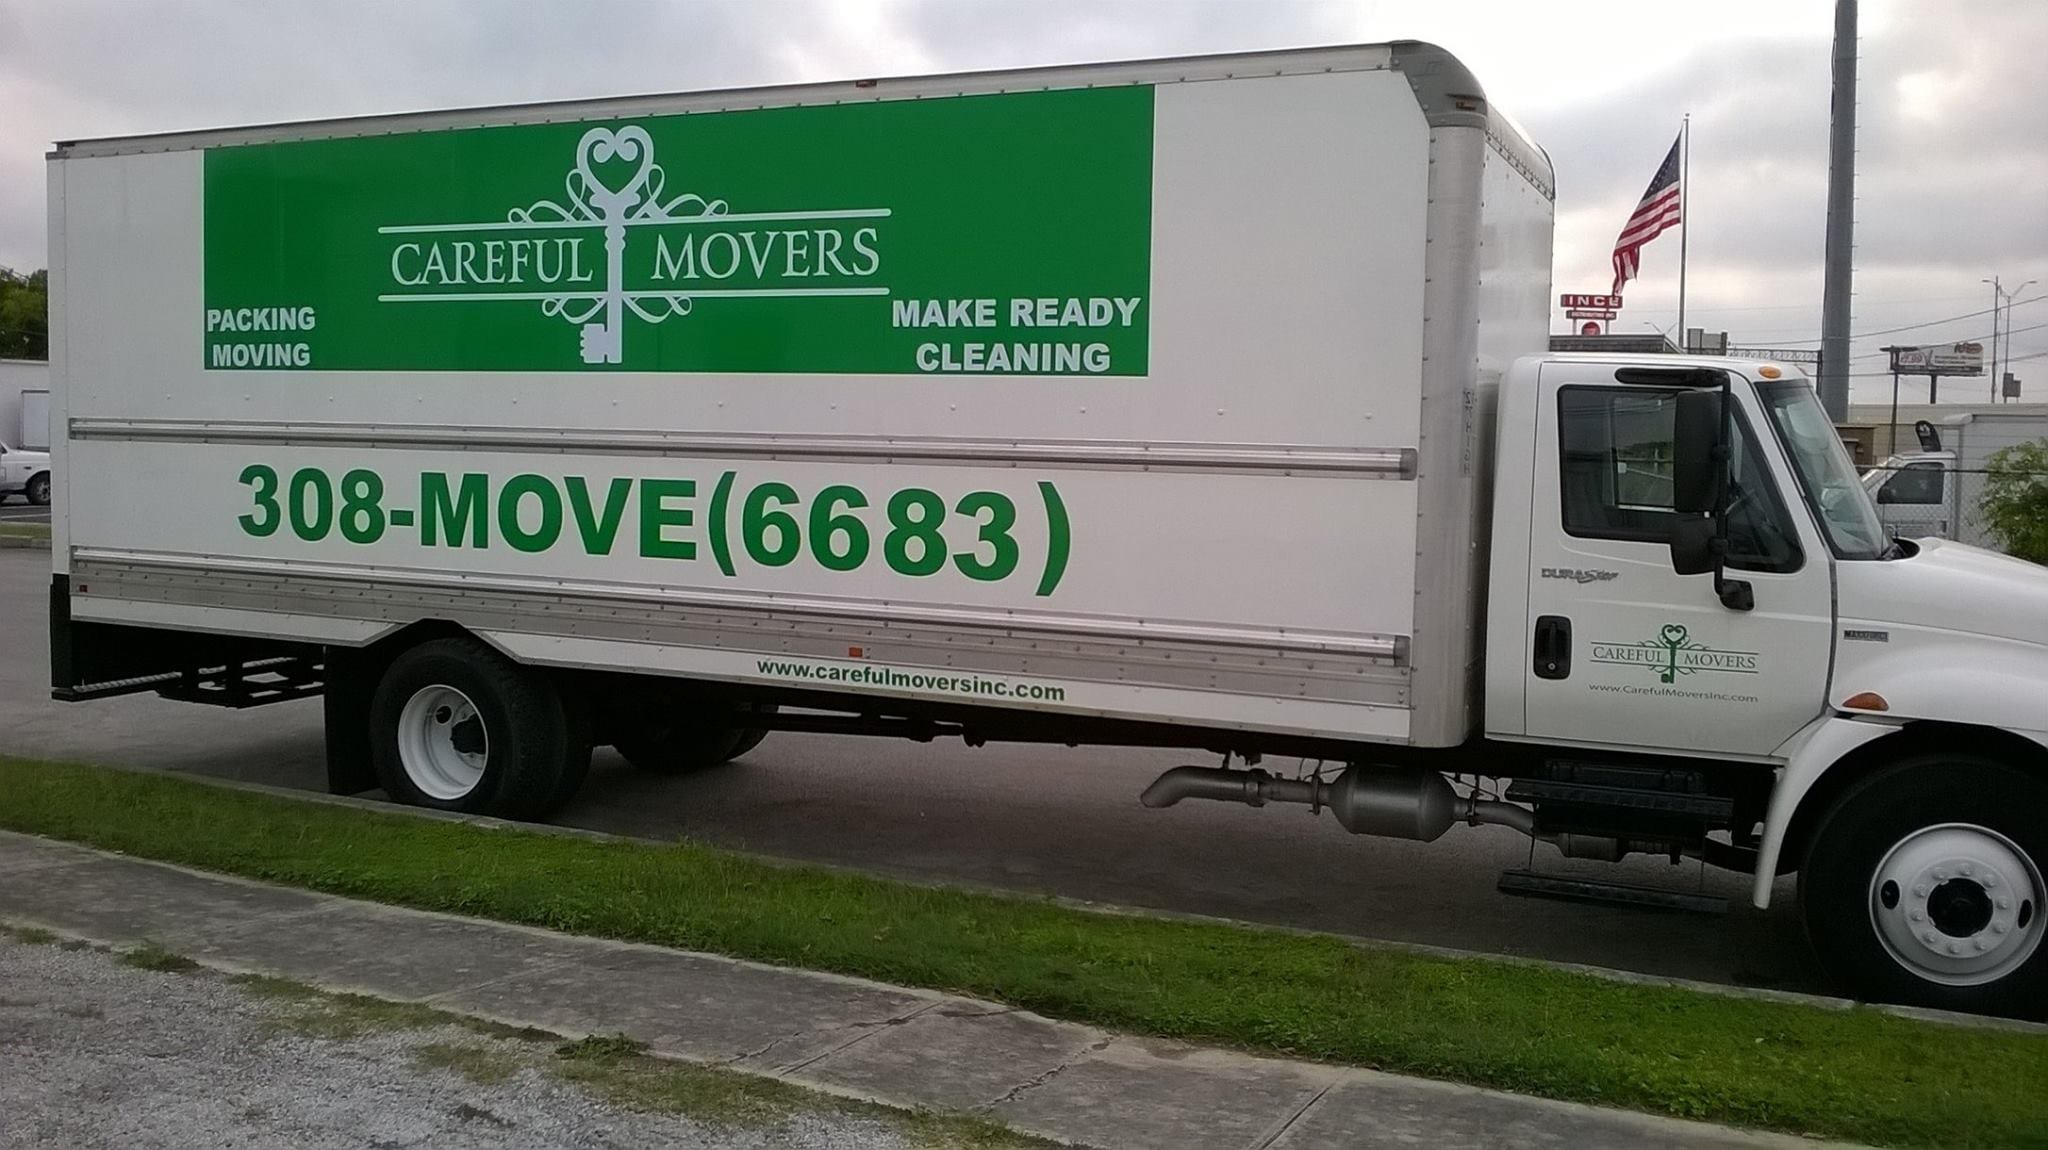 San Antonio moving company san antonio residential moving company san antonio movers